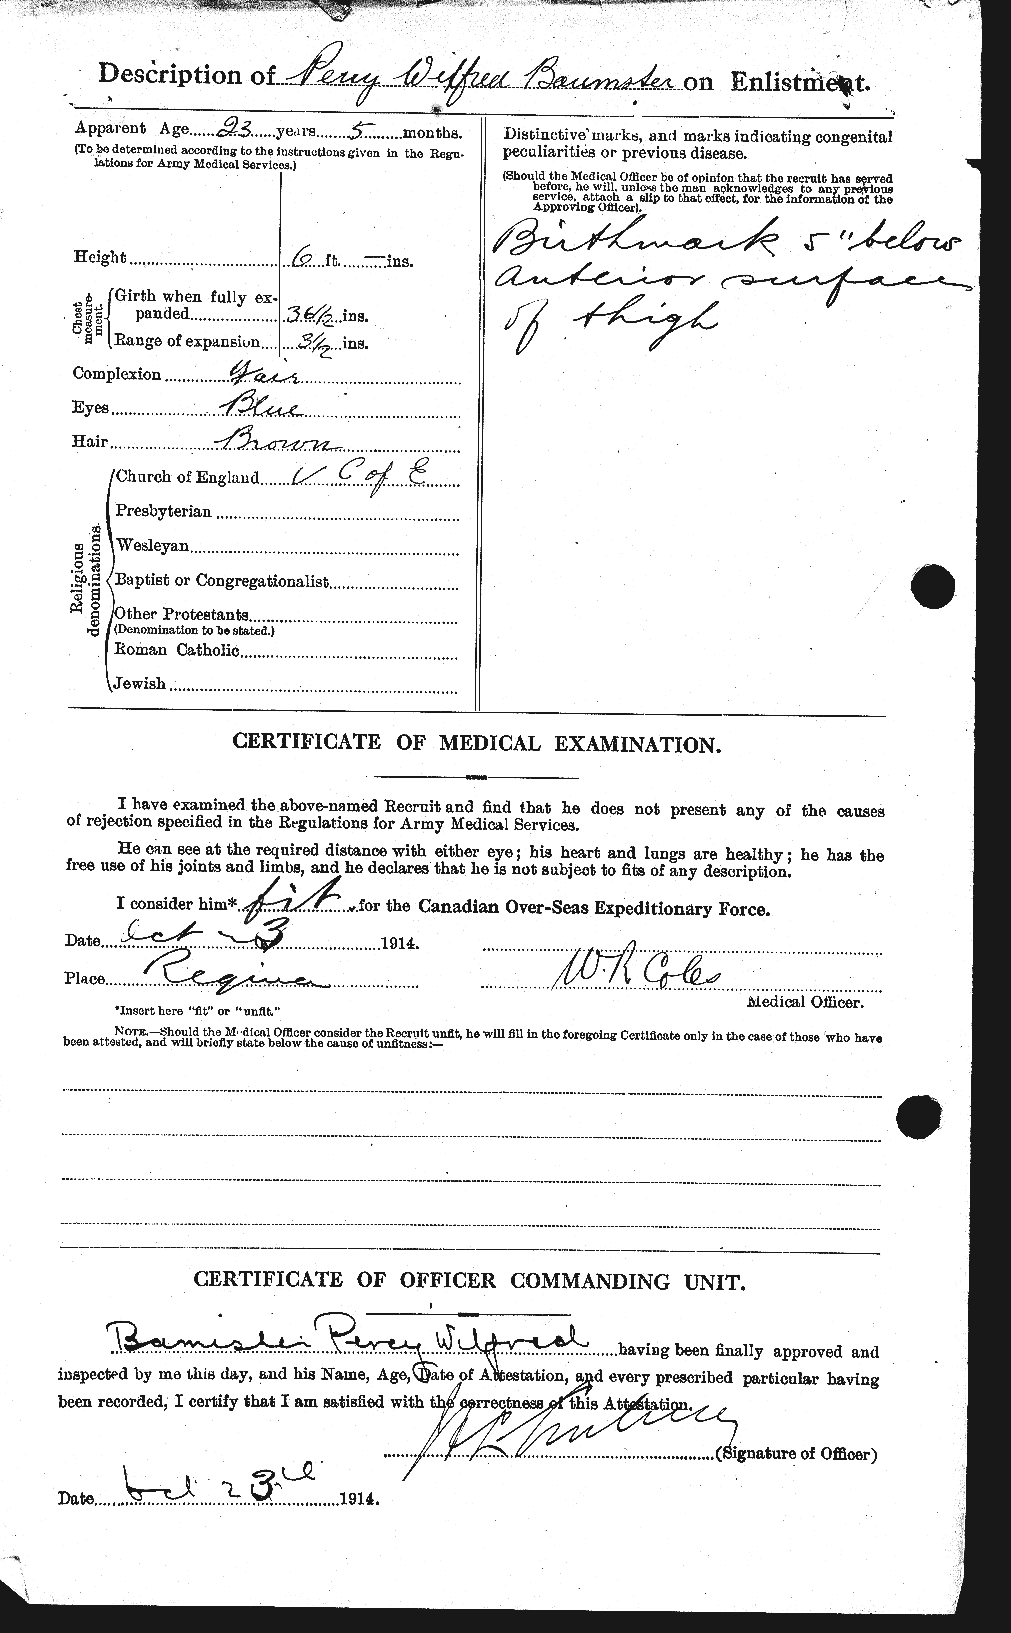 Dossiers du Personnel de la Première Guerre mondiale - CEC 224774b